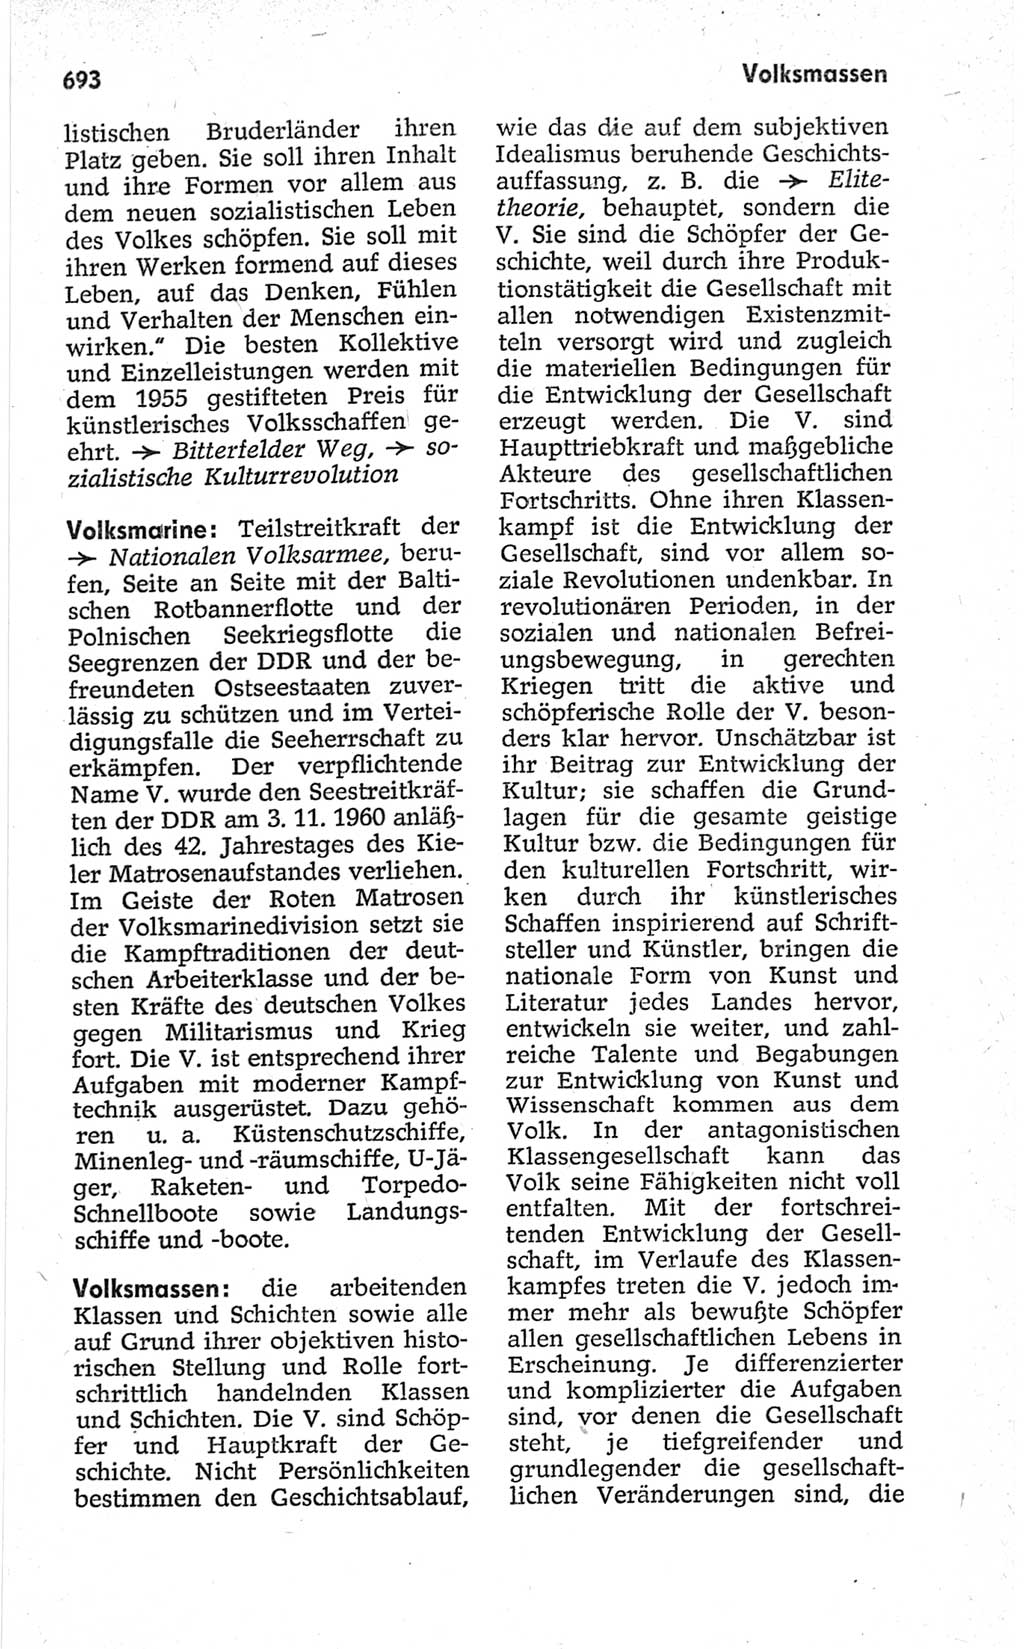 Kleines politisches Wörterbuch [Deutsche Demokratische Republik (DDR)] 1967, Seite 693 (Kl. pol. Wb. DDR 1967, S. 693)